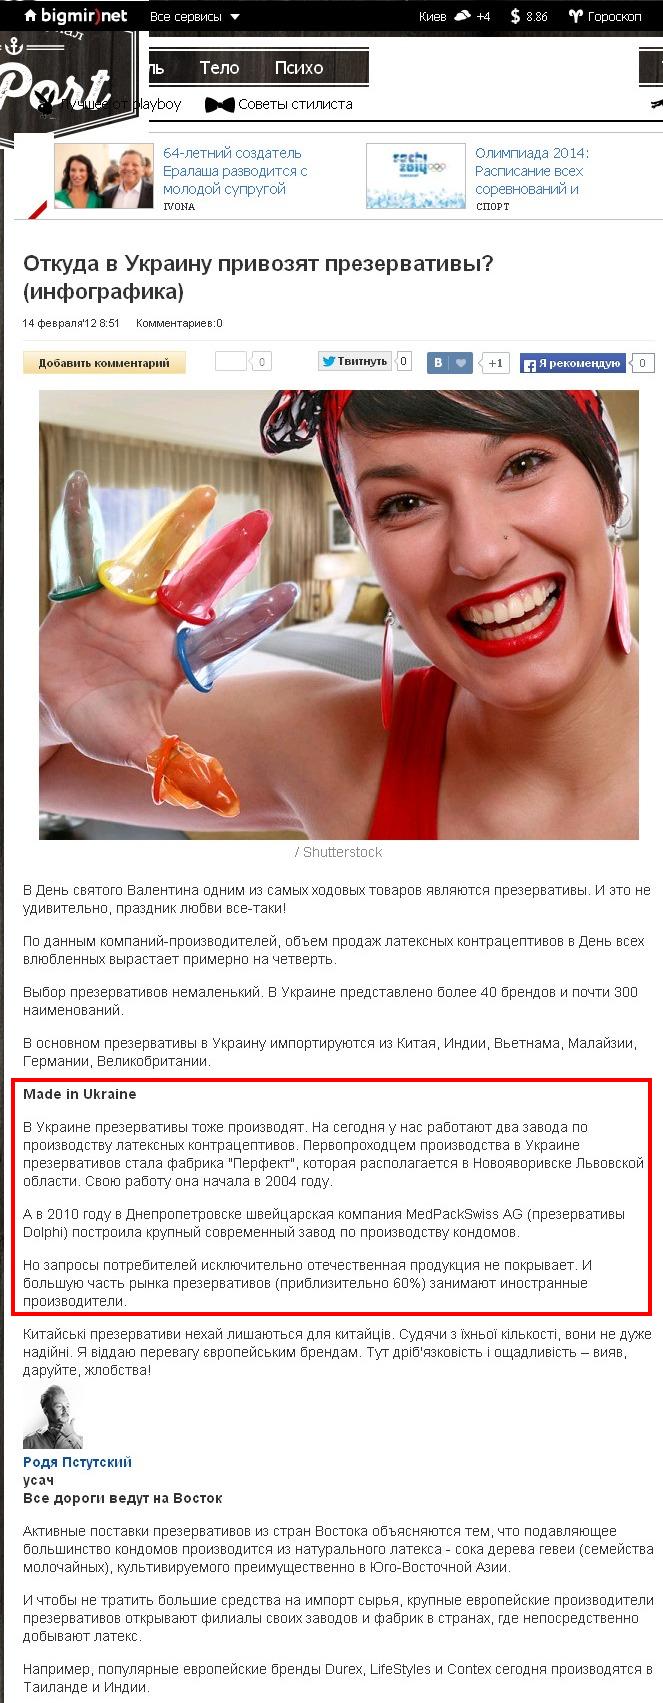 http://mport.ua/psycho/1550741-Otkyda-v-Ykrainy-privozyat-prezervativi-infografika